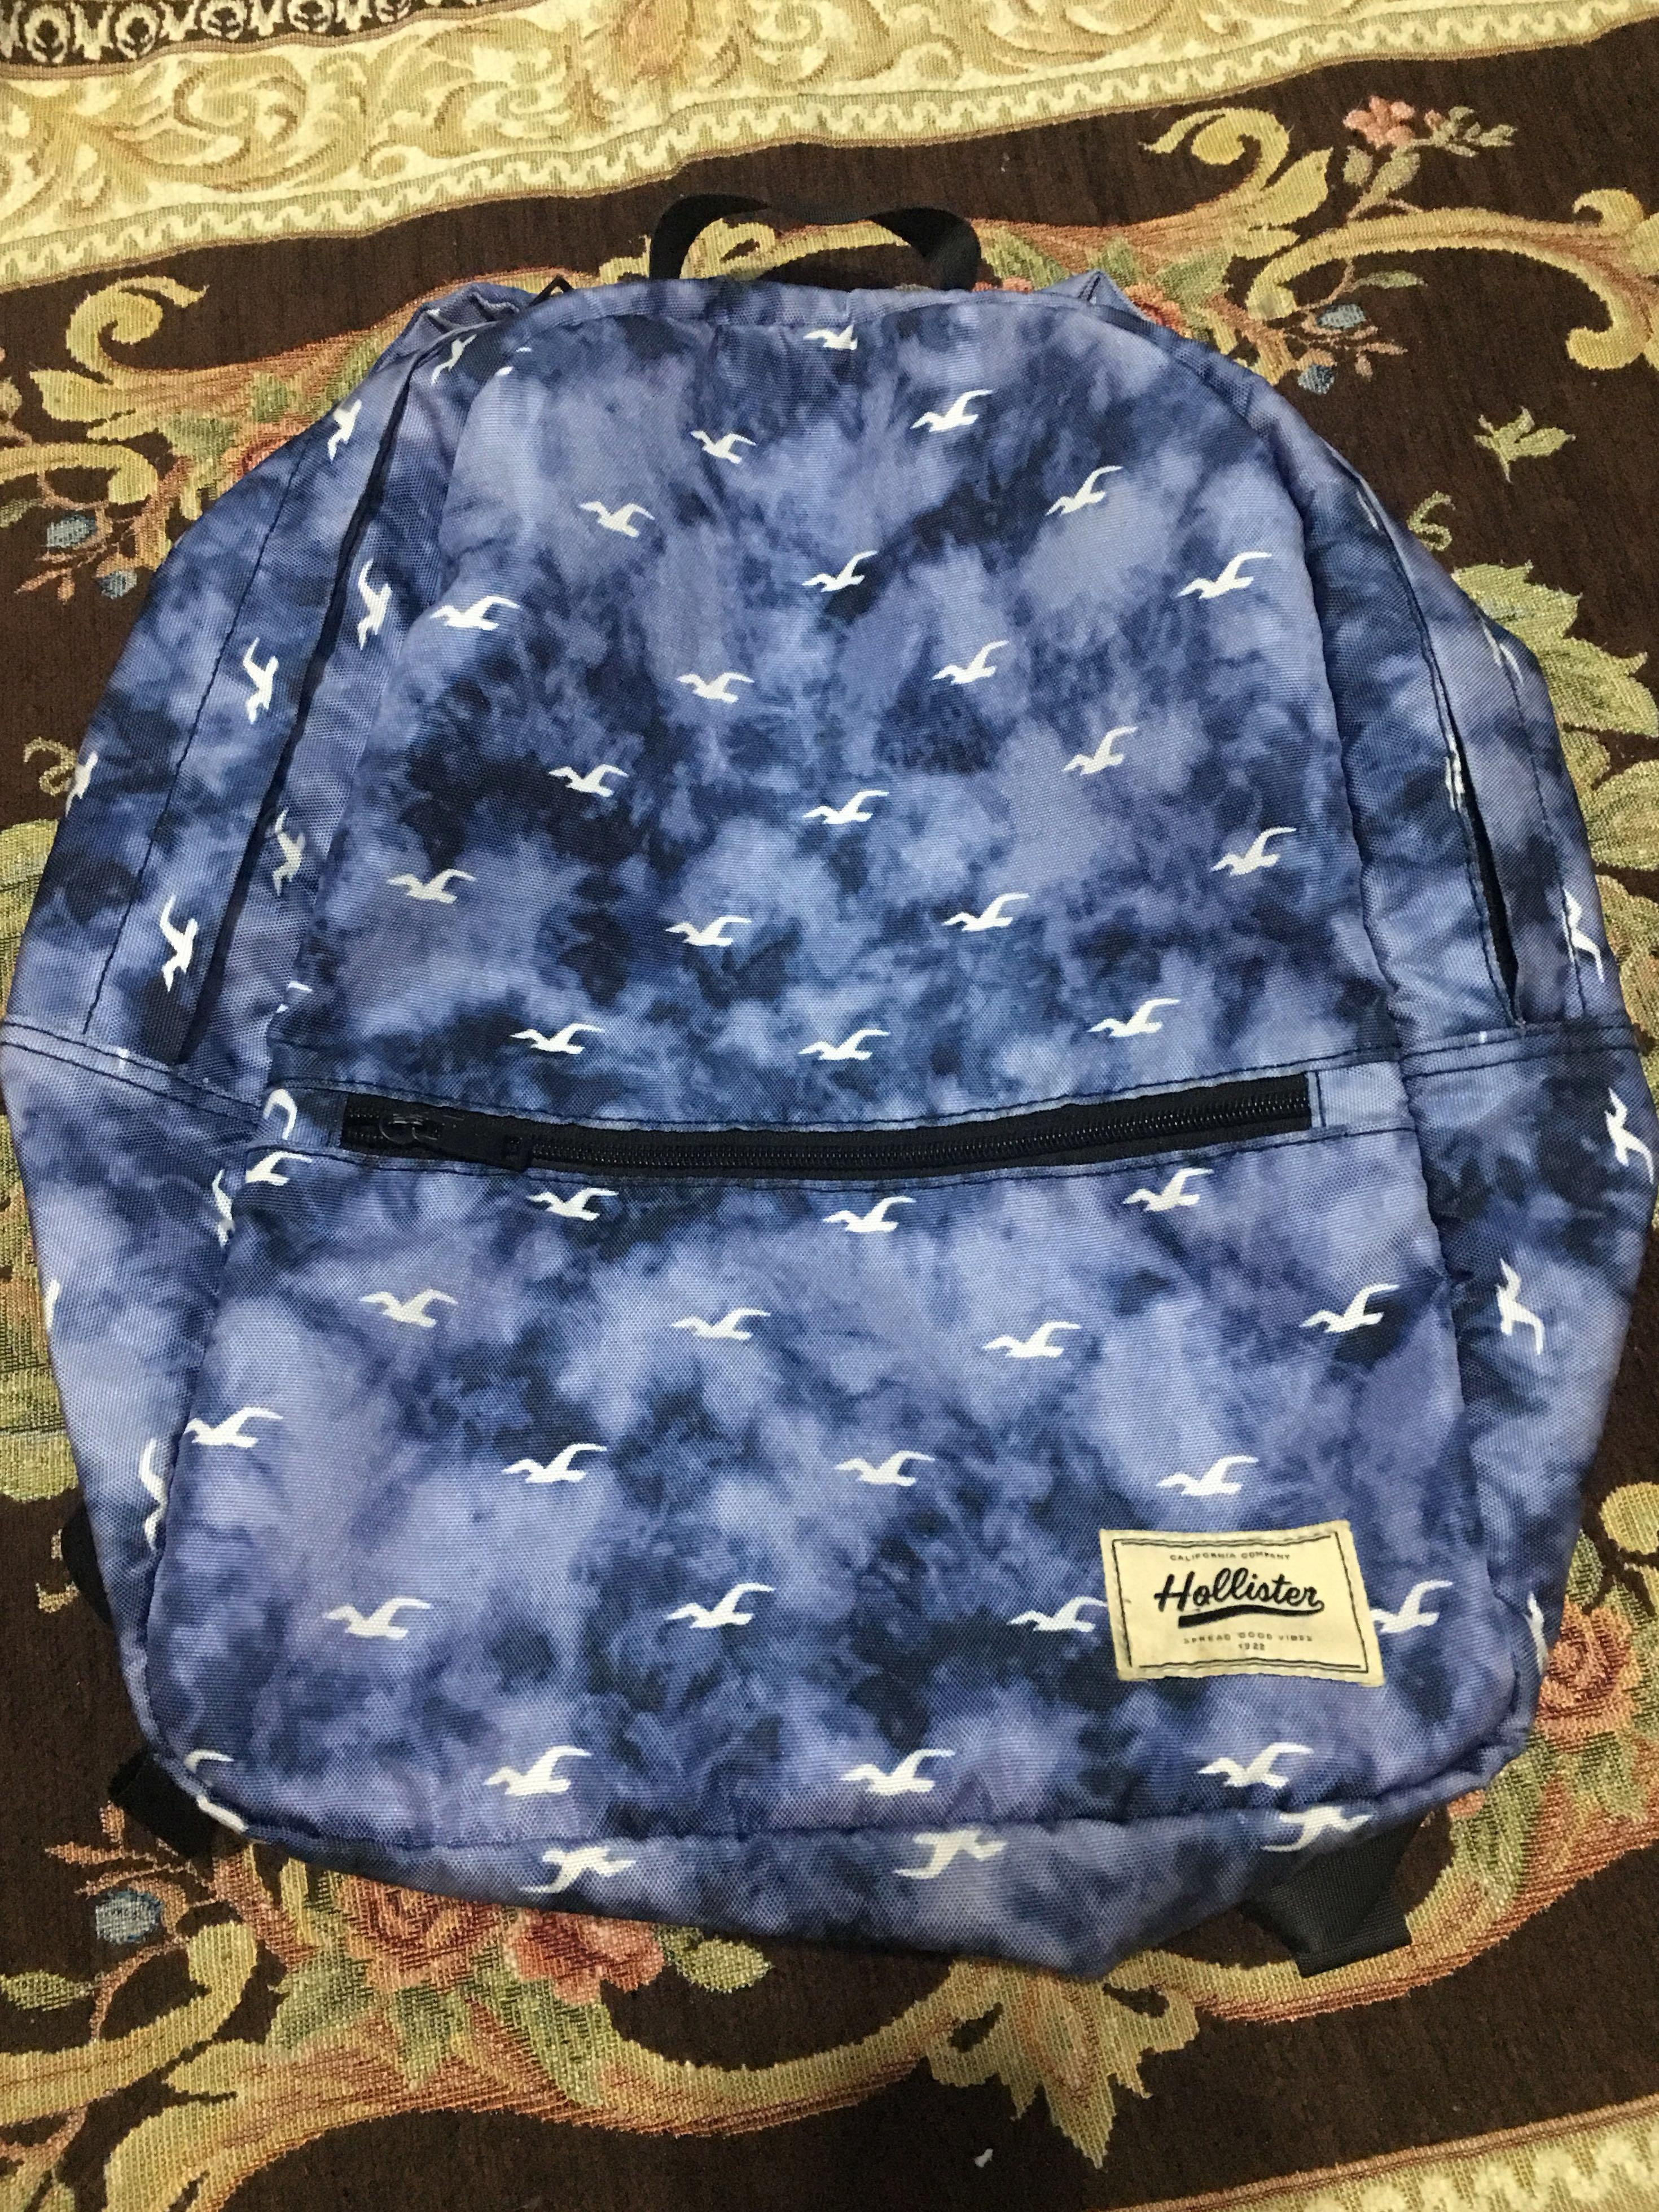 hollister backpacks for school